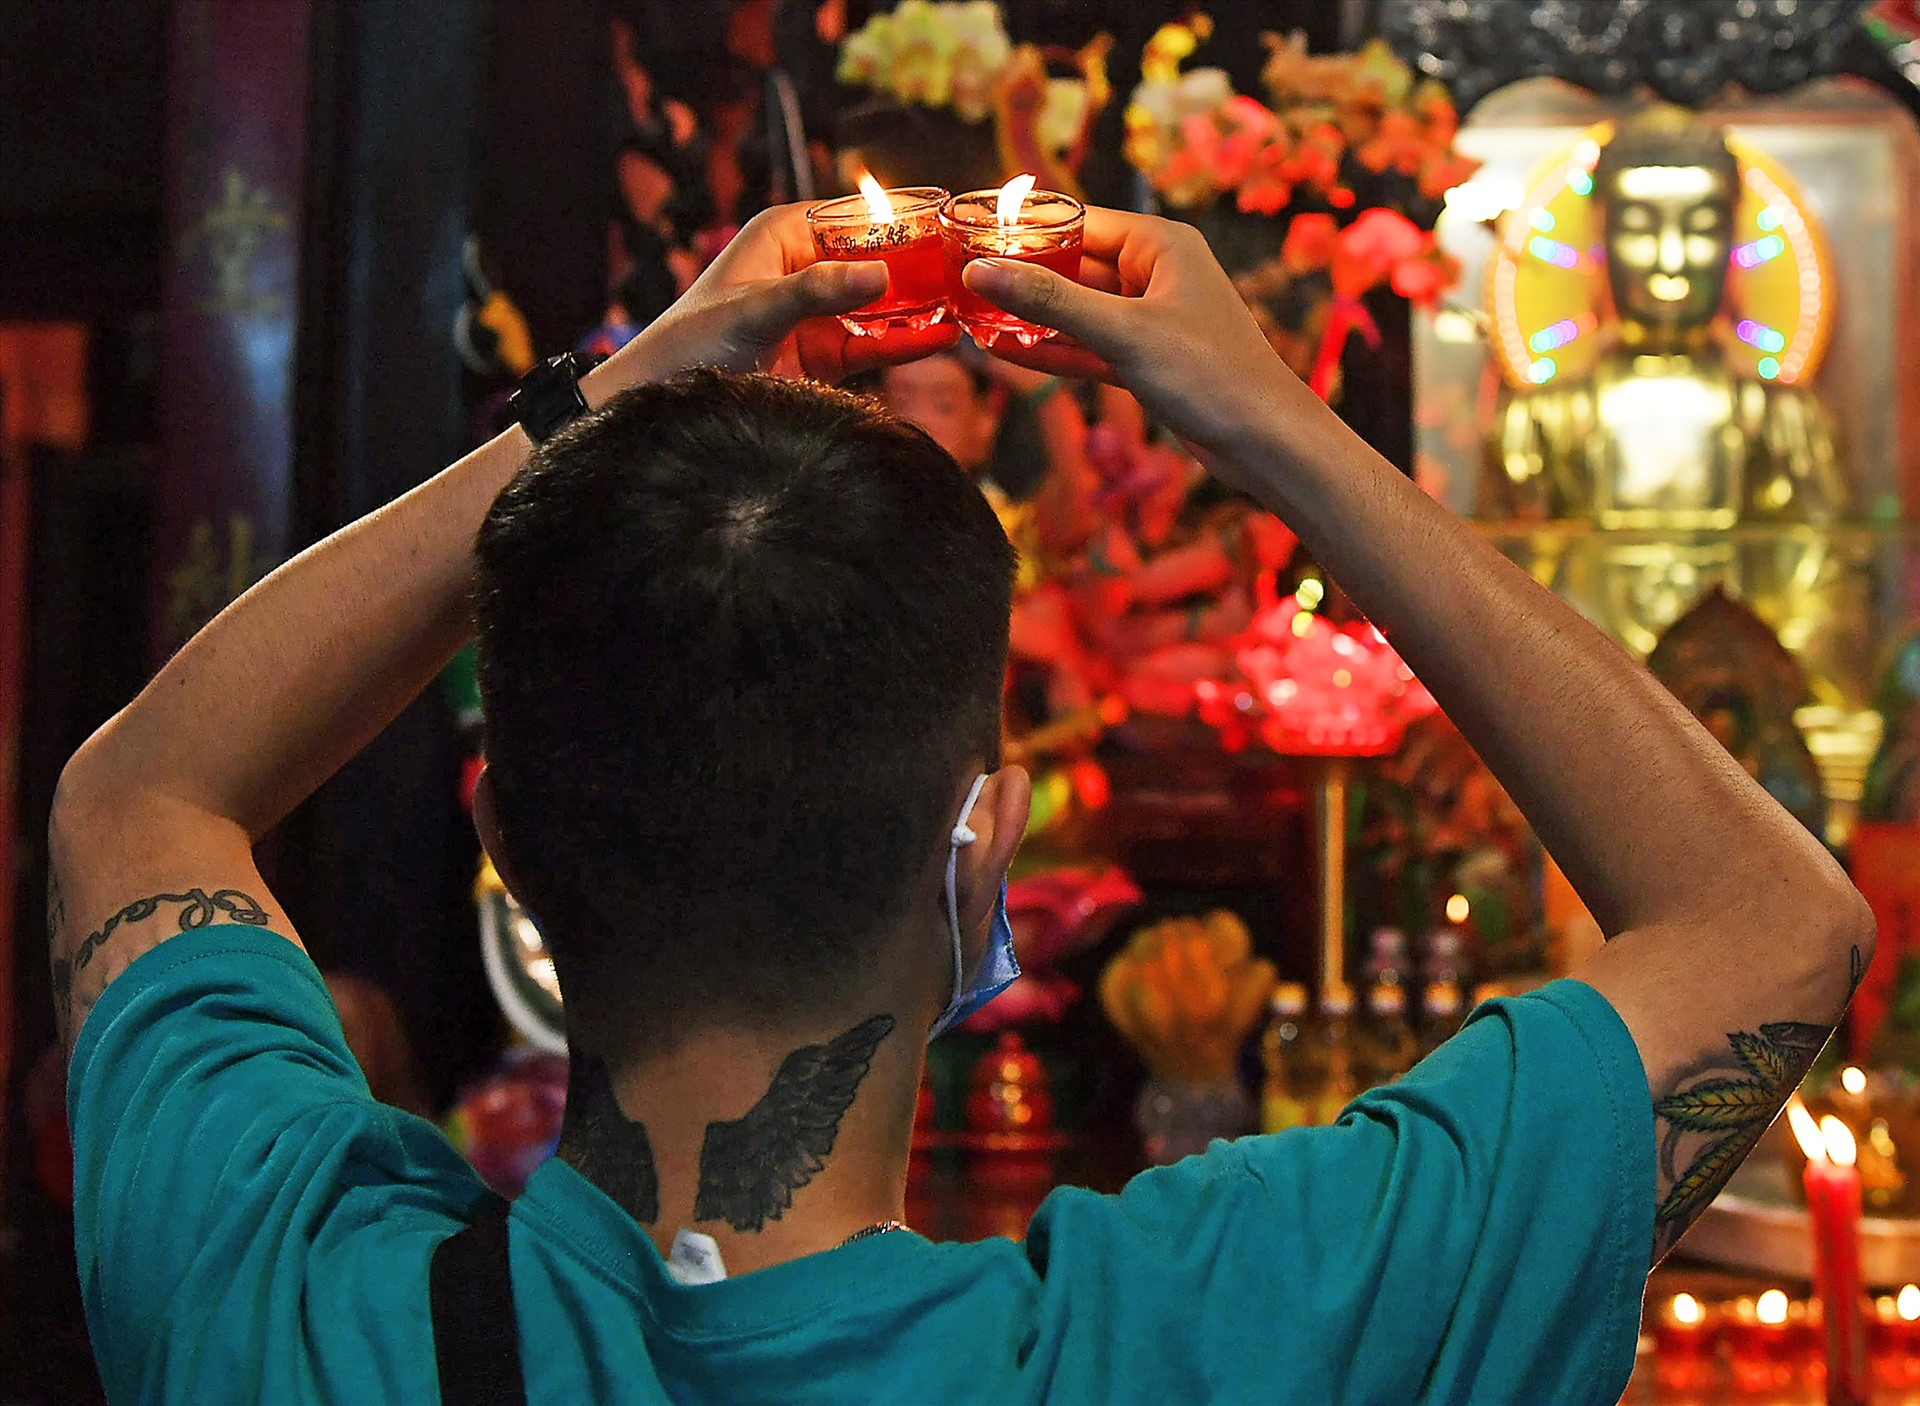 Chùa Ngọc Hoàng có điện thờ Phật Dược Sư để khách cầu sức khỏe. Một thanh niên với hình xăm ấn tượng đang thành kính lễ bái.